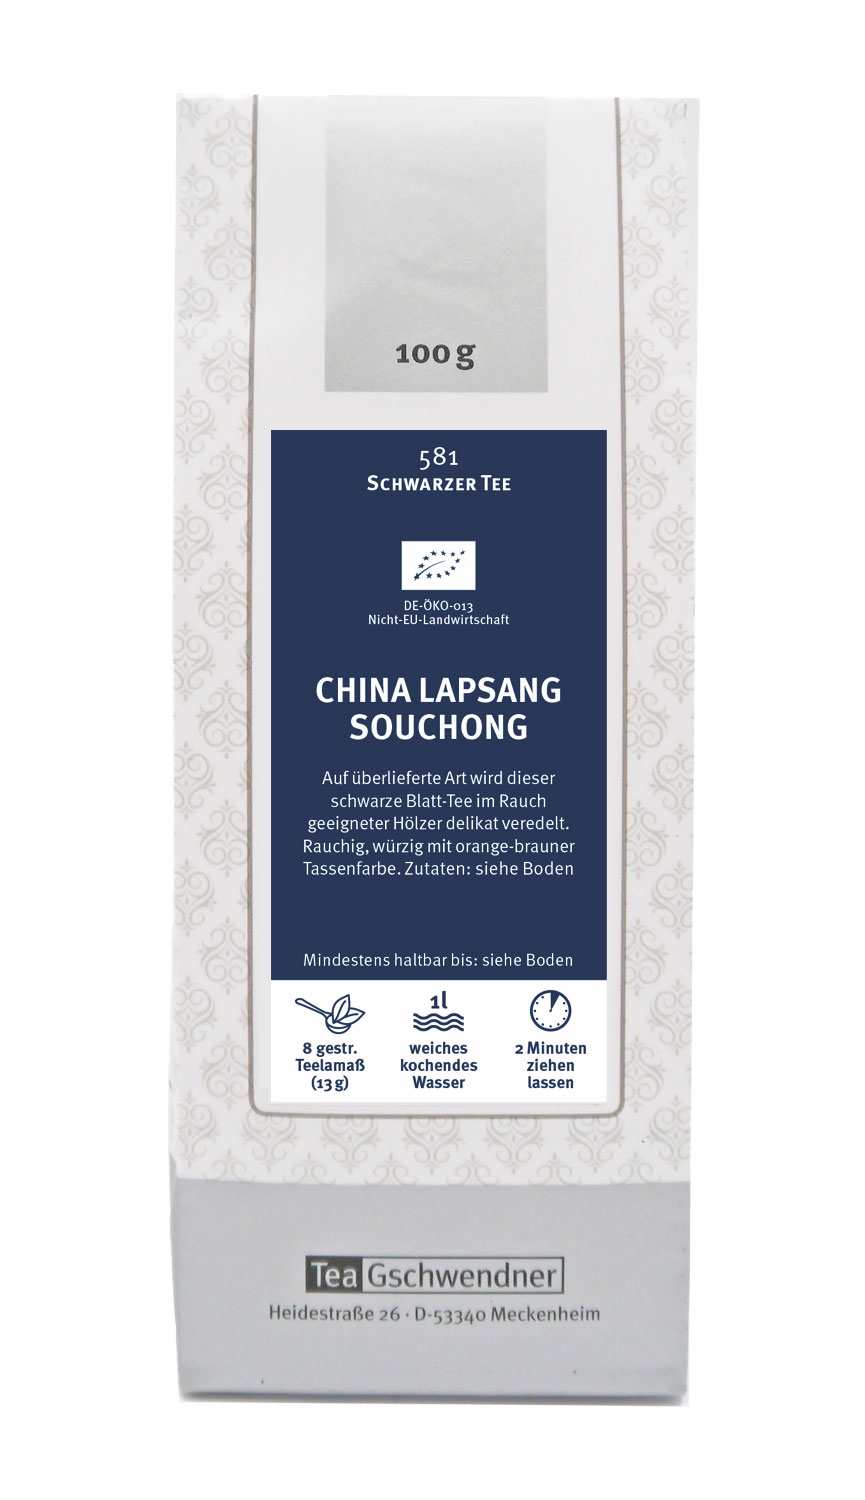 China Lapsang Souchong Organic